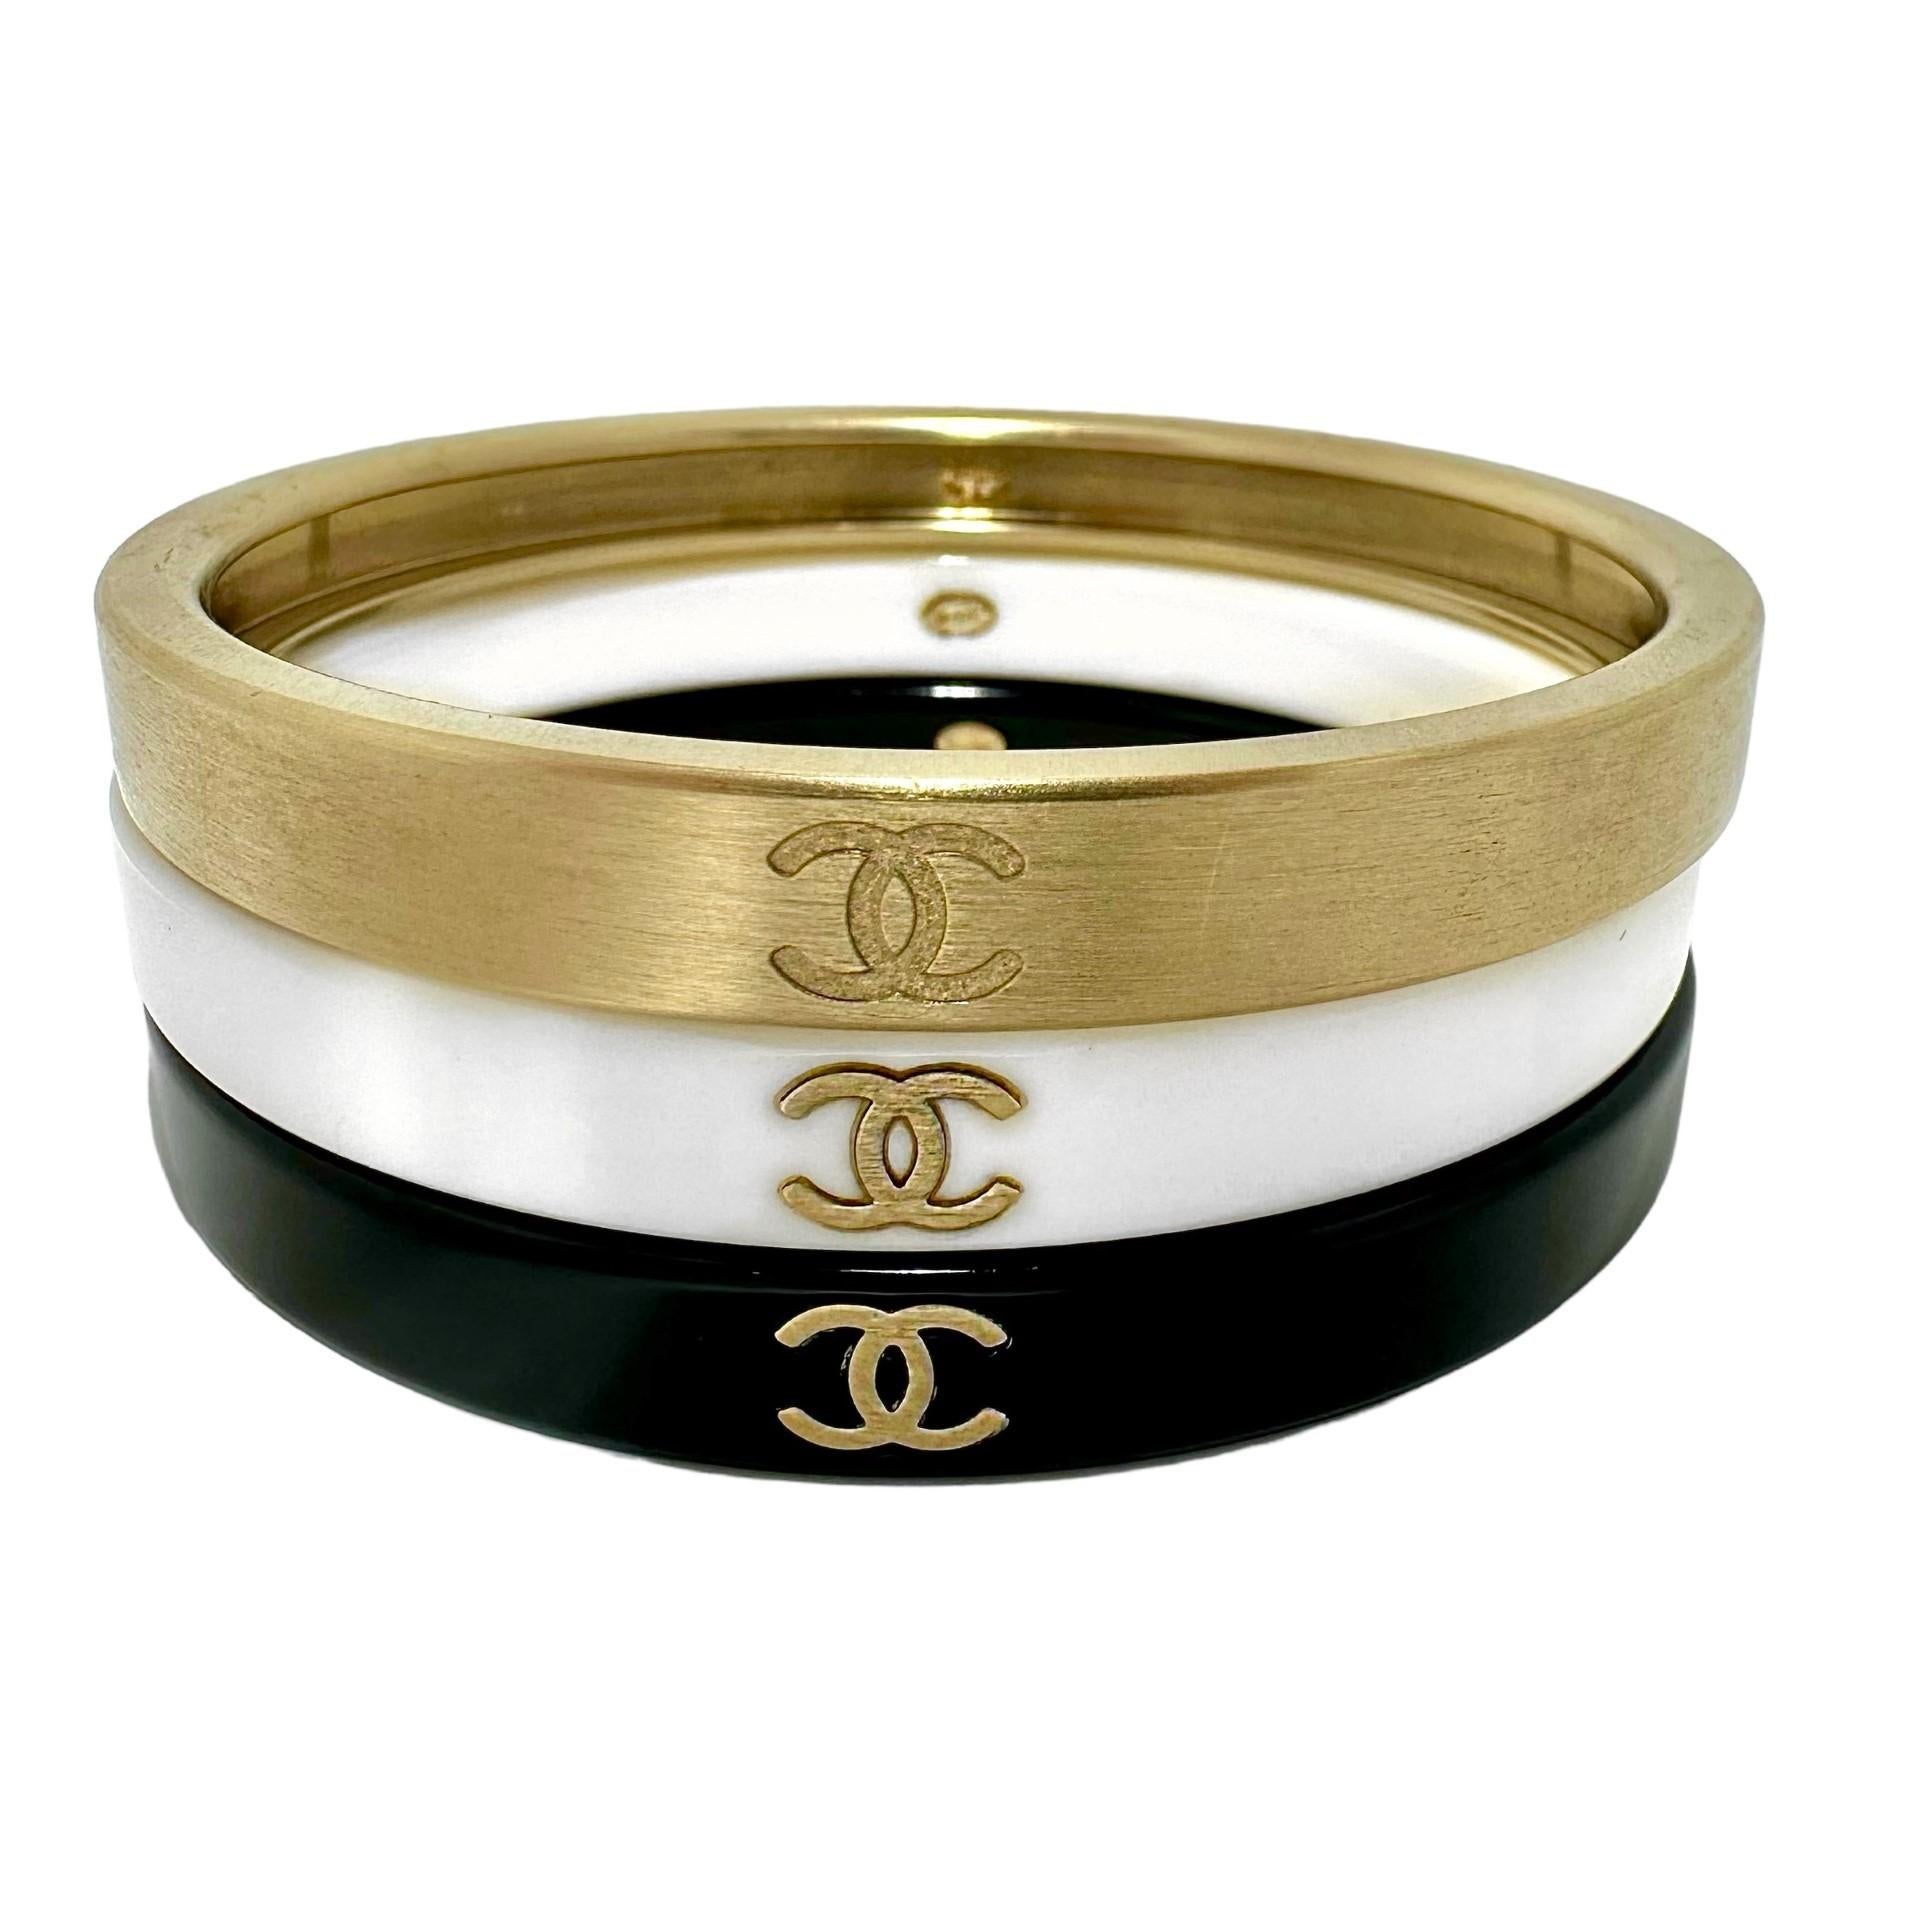 Ce magnifique coffret Chanel vintage a été publié dans le cadre de la collection Automne 2010. Fabrice en métal brossé ton or et en résine. Chacun des trois bracelets est embossé du logo CHANEL A.I.C. en trois endroits. A l'intérieur de chaque pièce